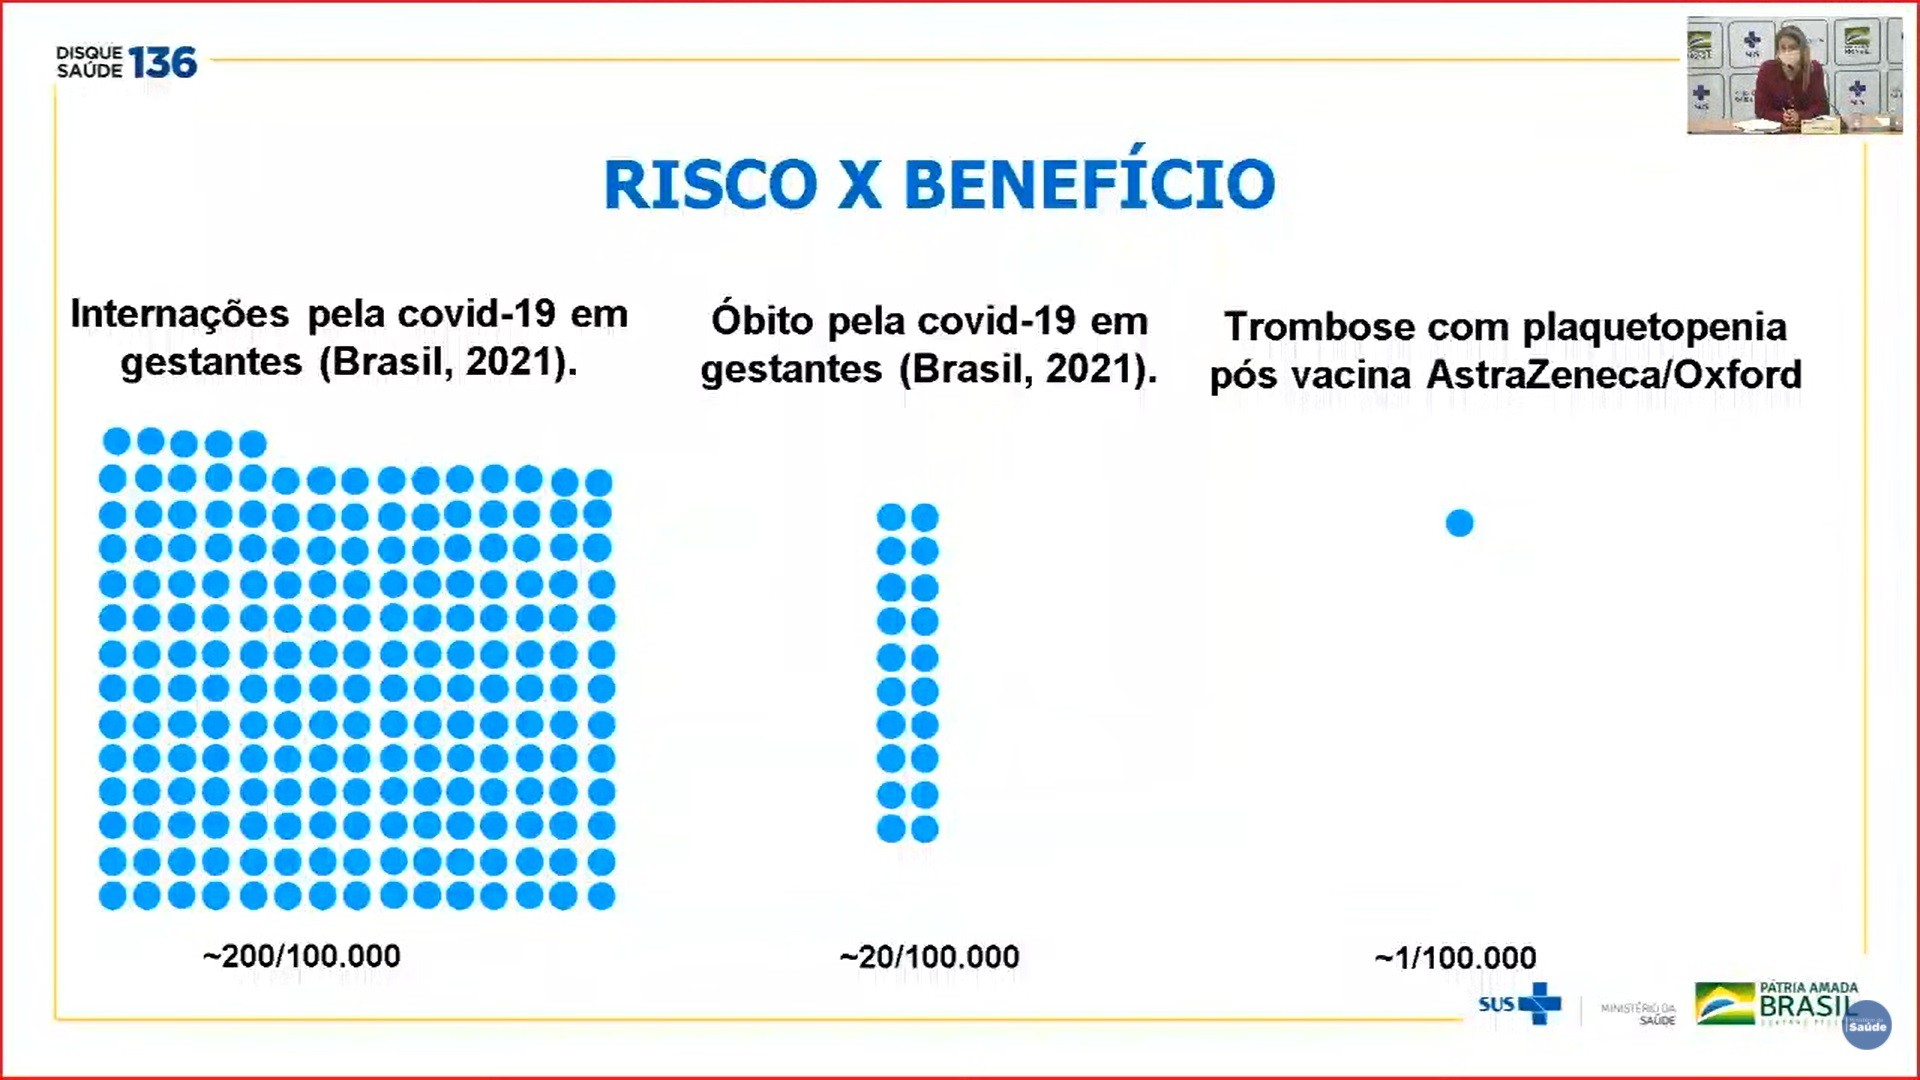 Gráfico elaborado pelo Ministério da Saúde comparando o risco x benefício da vacina contra covid-19 para gestantes (Foto: Ministério da Saúde)